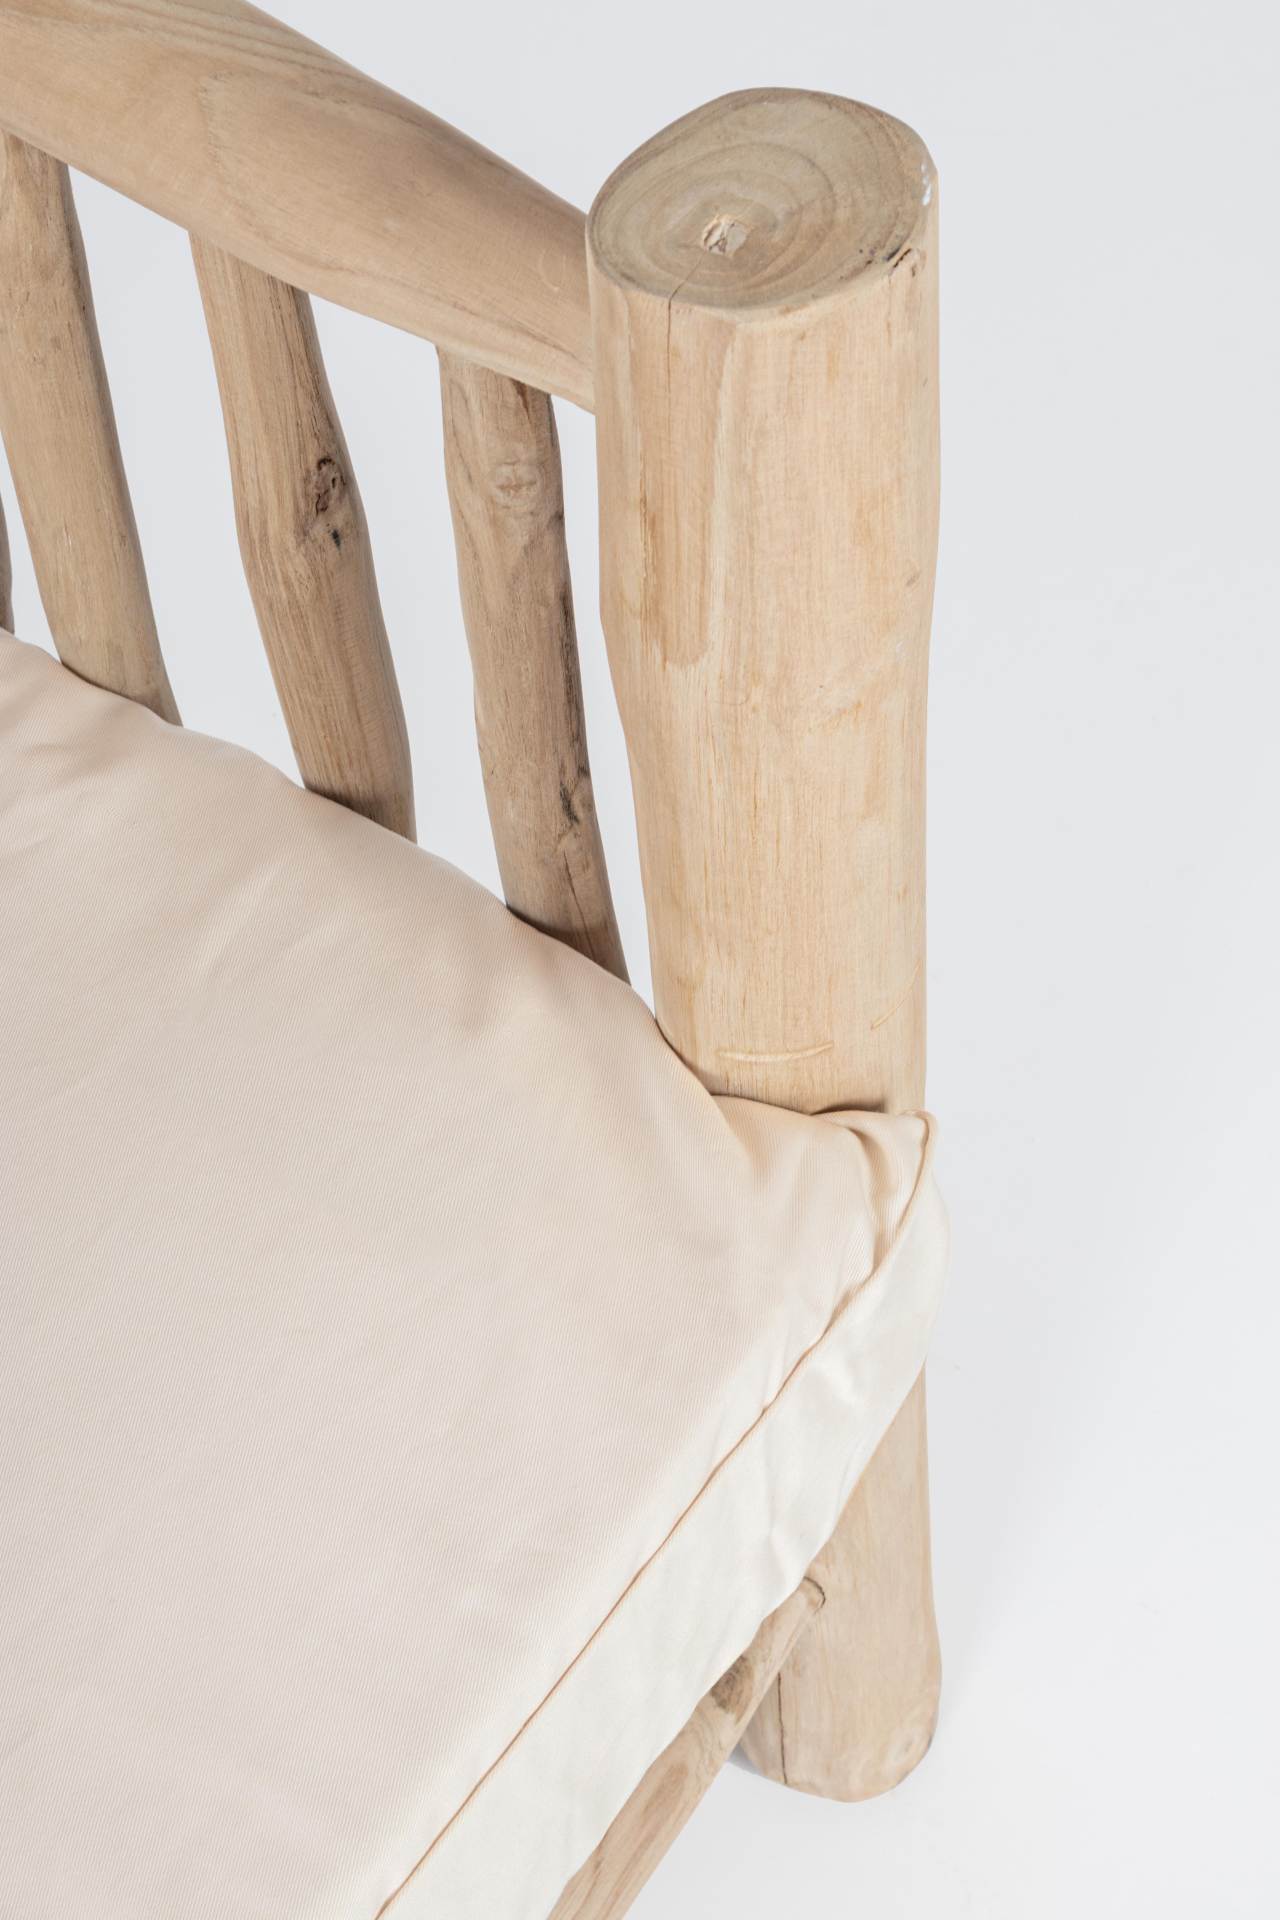 Der Sessel Sahel überzeugt mit seinem klassischen Design. Gefertigt wurde er aus Teakholz, welches einen natürlichen Farbton besitzt. Die Kissen sind aus einem Mix aus Baumwolle und Leinen. Der Sessel besitzt eine Sitzhöhe von 43 cm. Die Breite beträgt 70